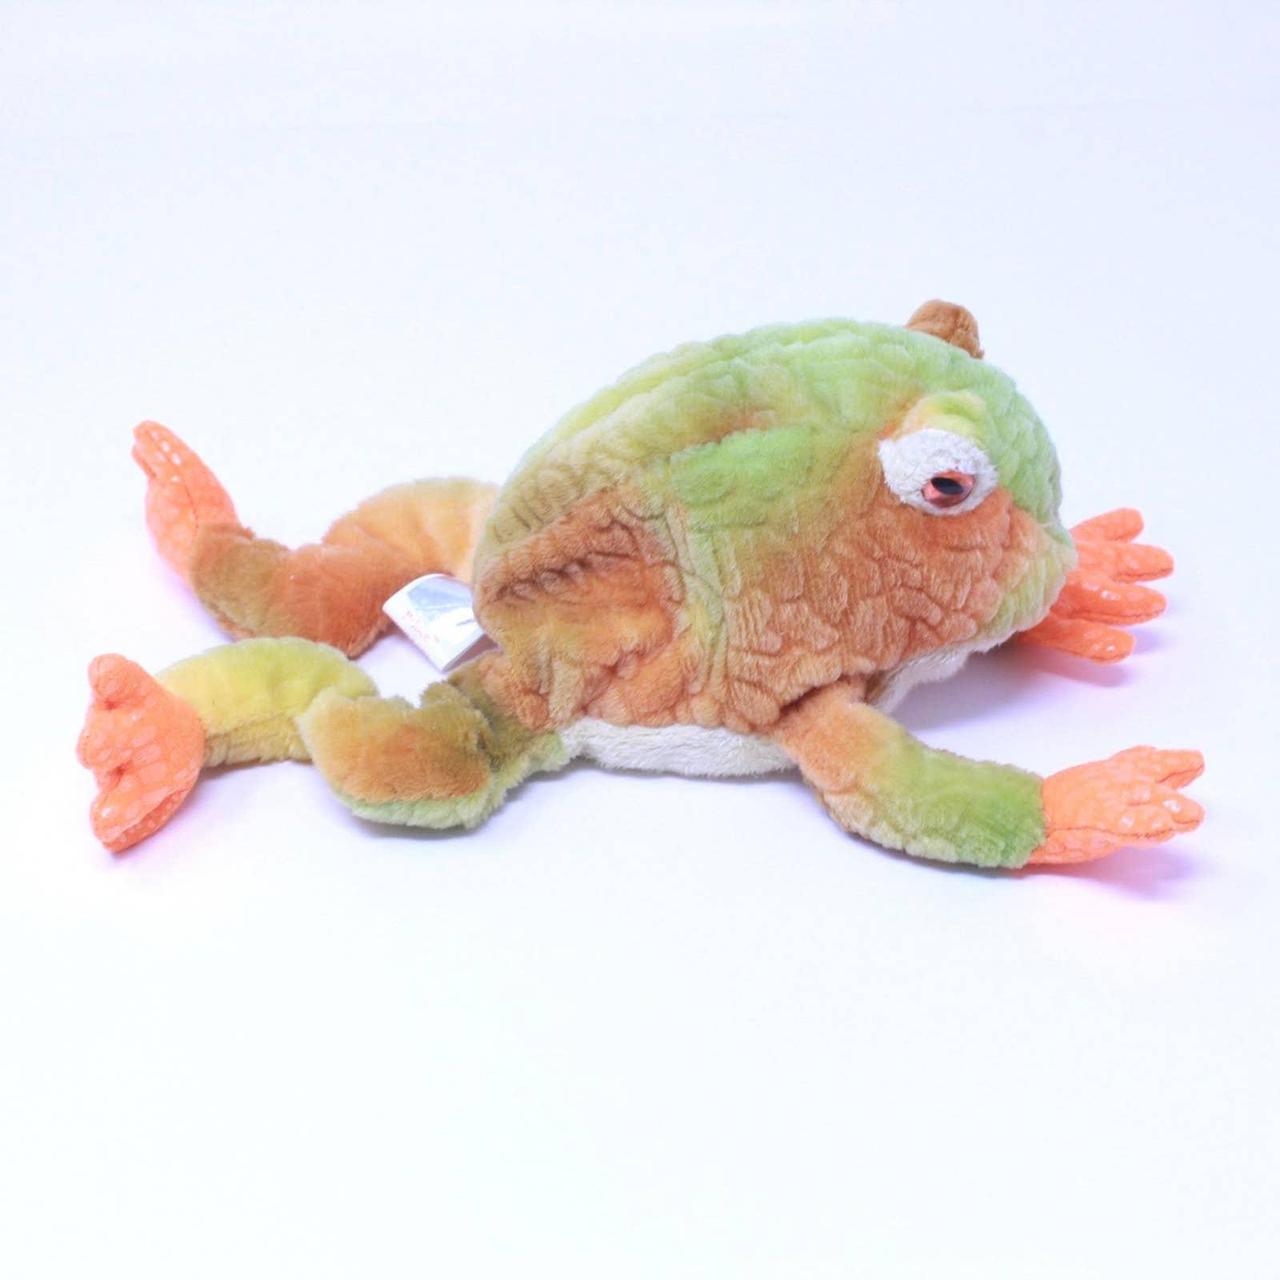 TY Vintage Frog Prince Beanie Baby Free - Depop